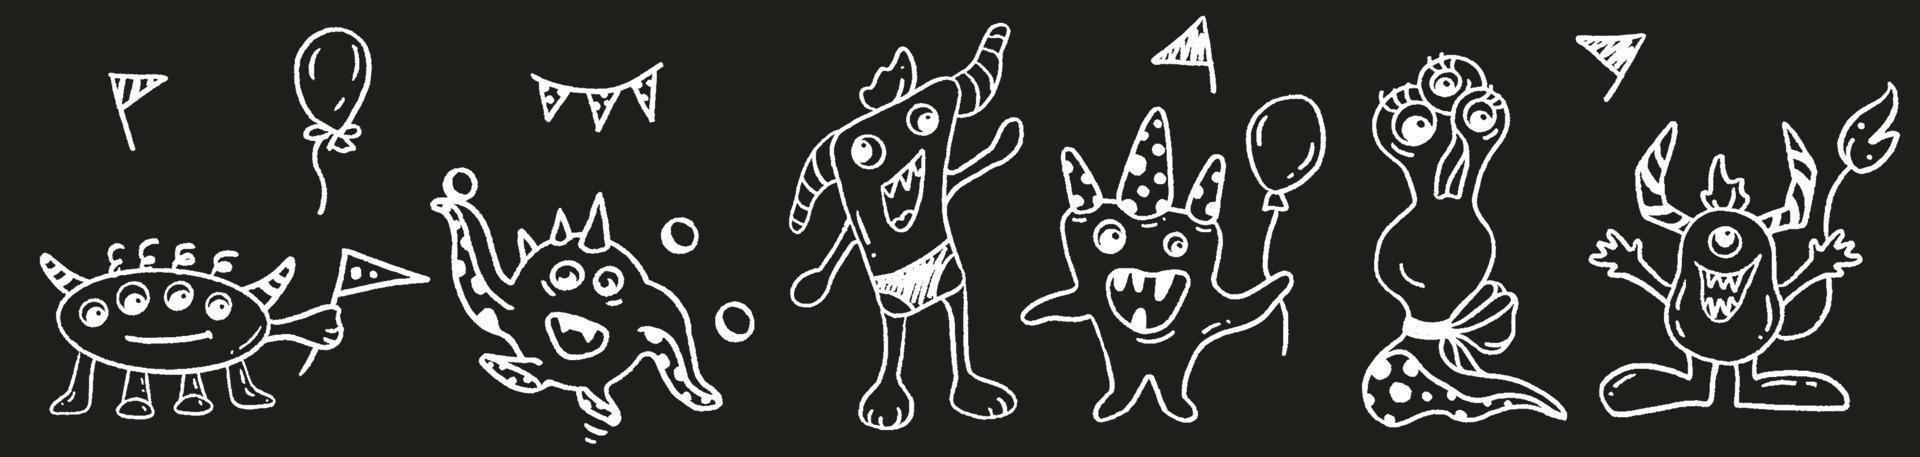 ilustración vectorial dibujada a mano en blanco y negro de 6 monstruos divertidos vector